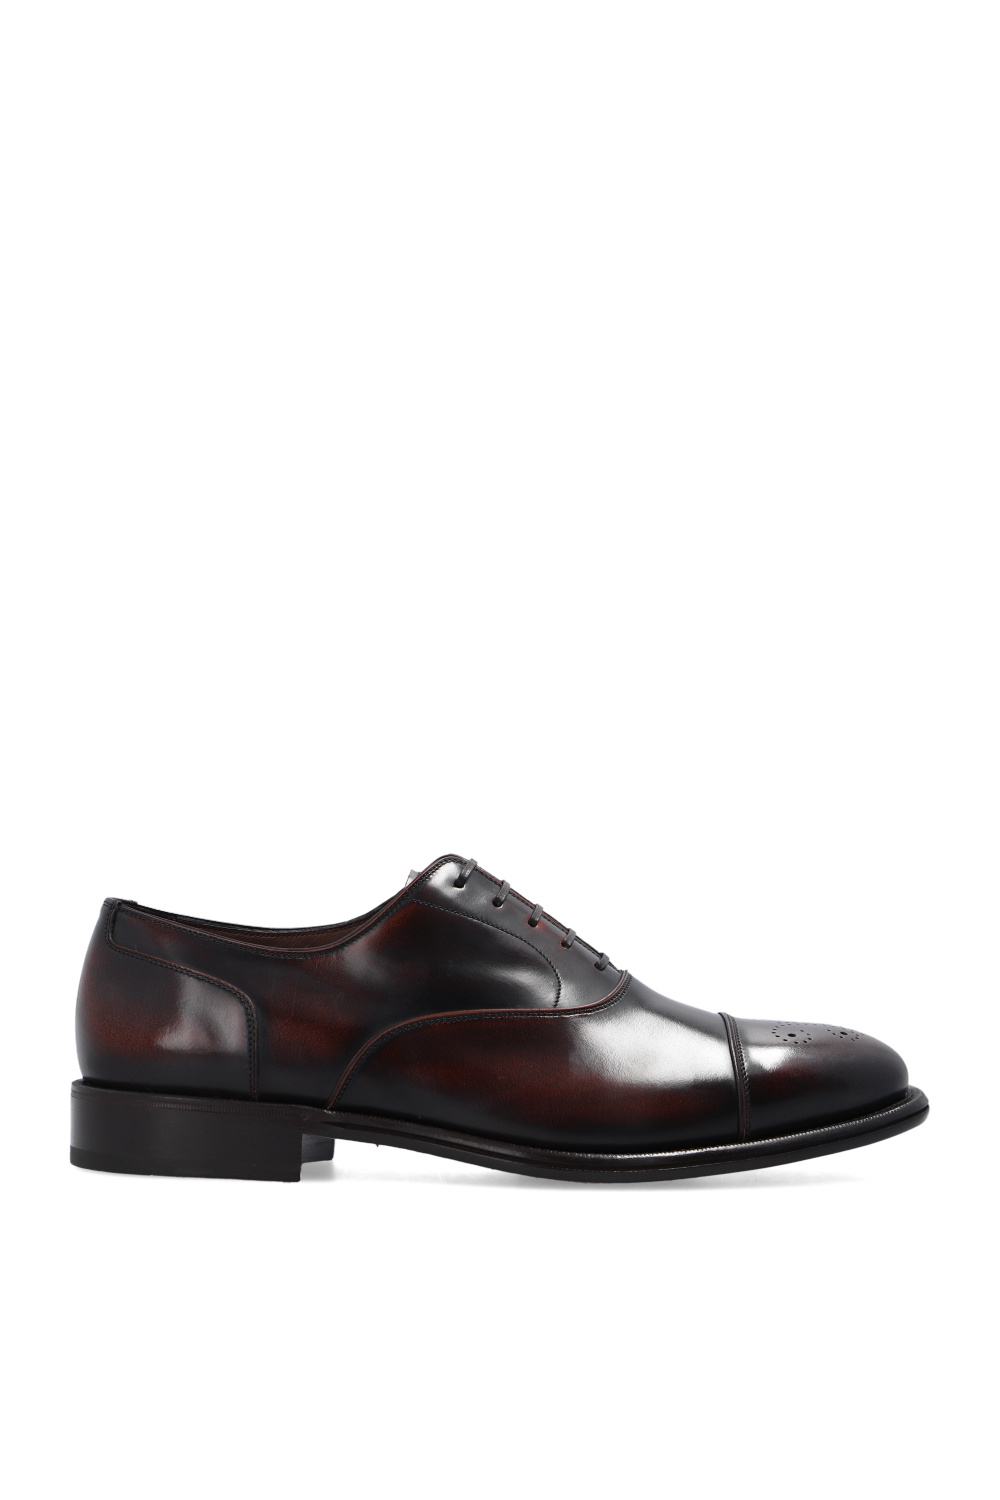 Salvatore Ferragamo ‘Maxime’ Oxford shoes